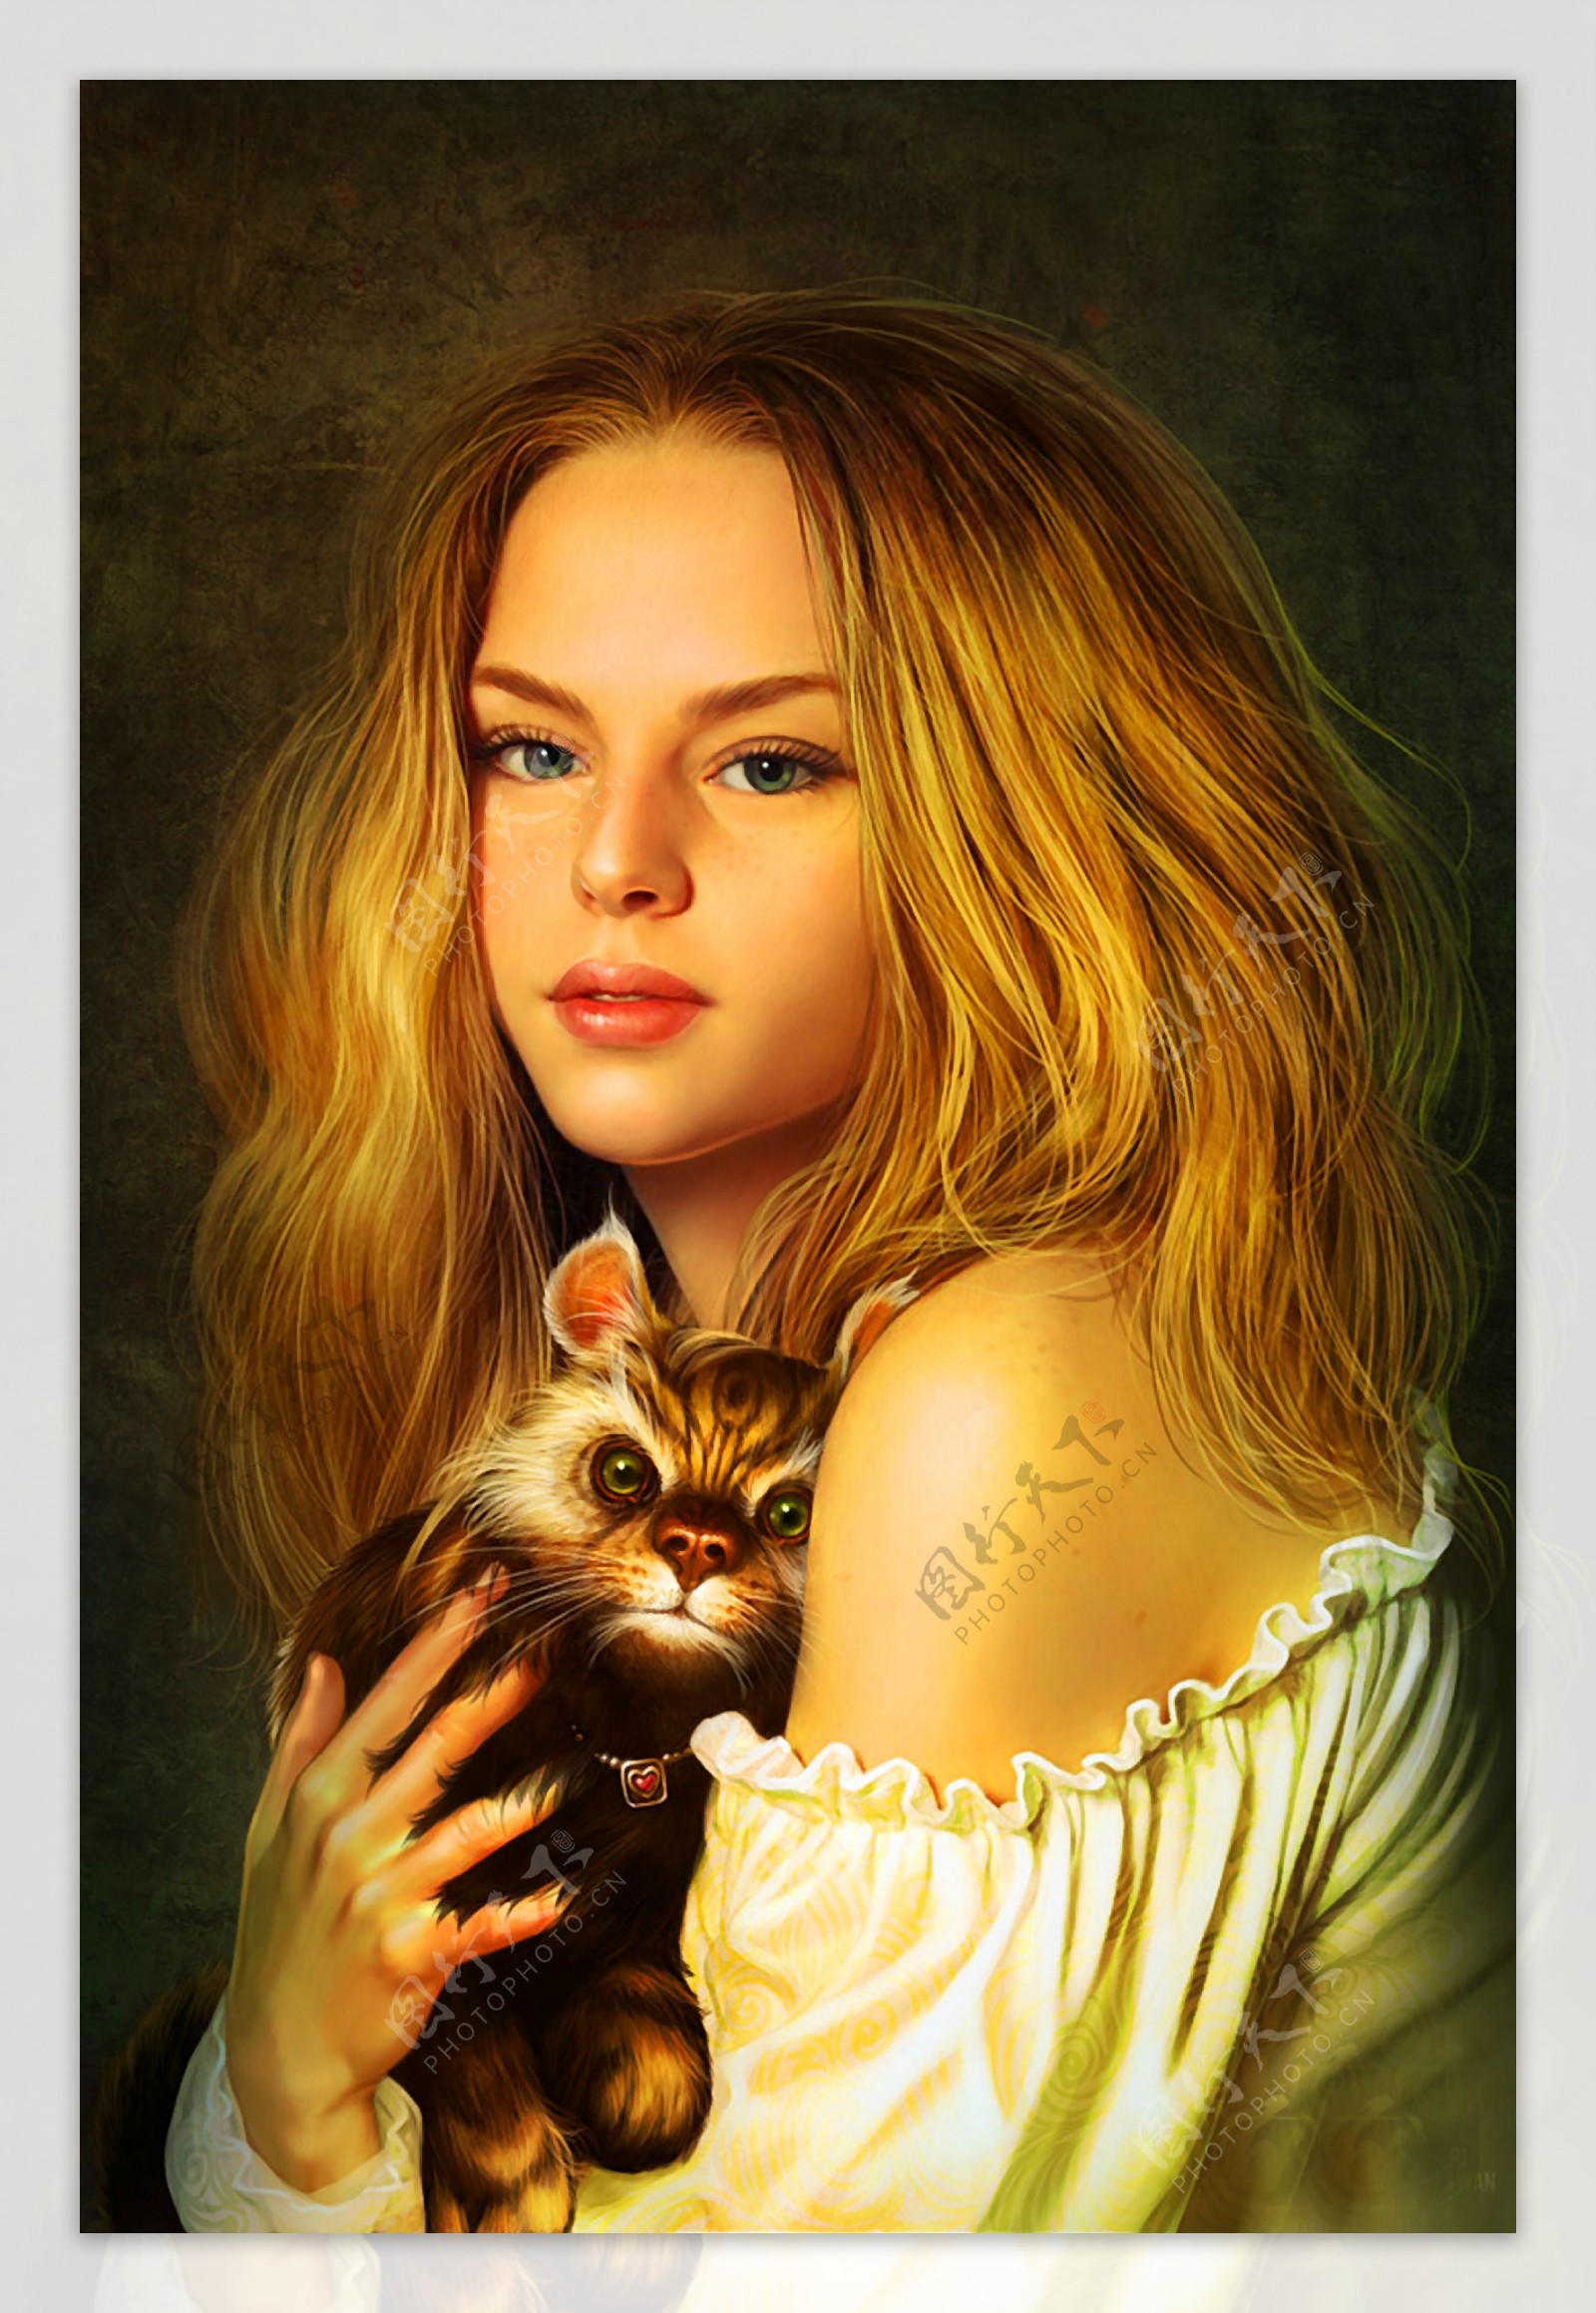 少女抱着猫的动漫头像-图库-五毛网